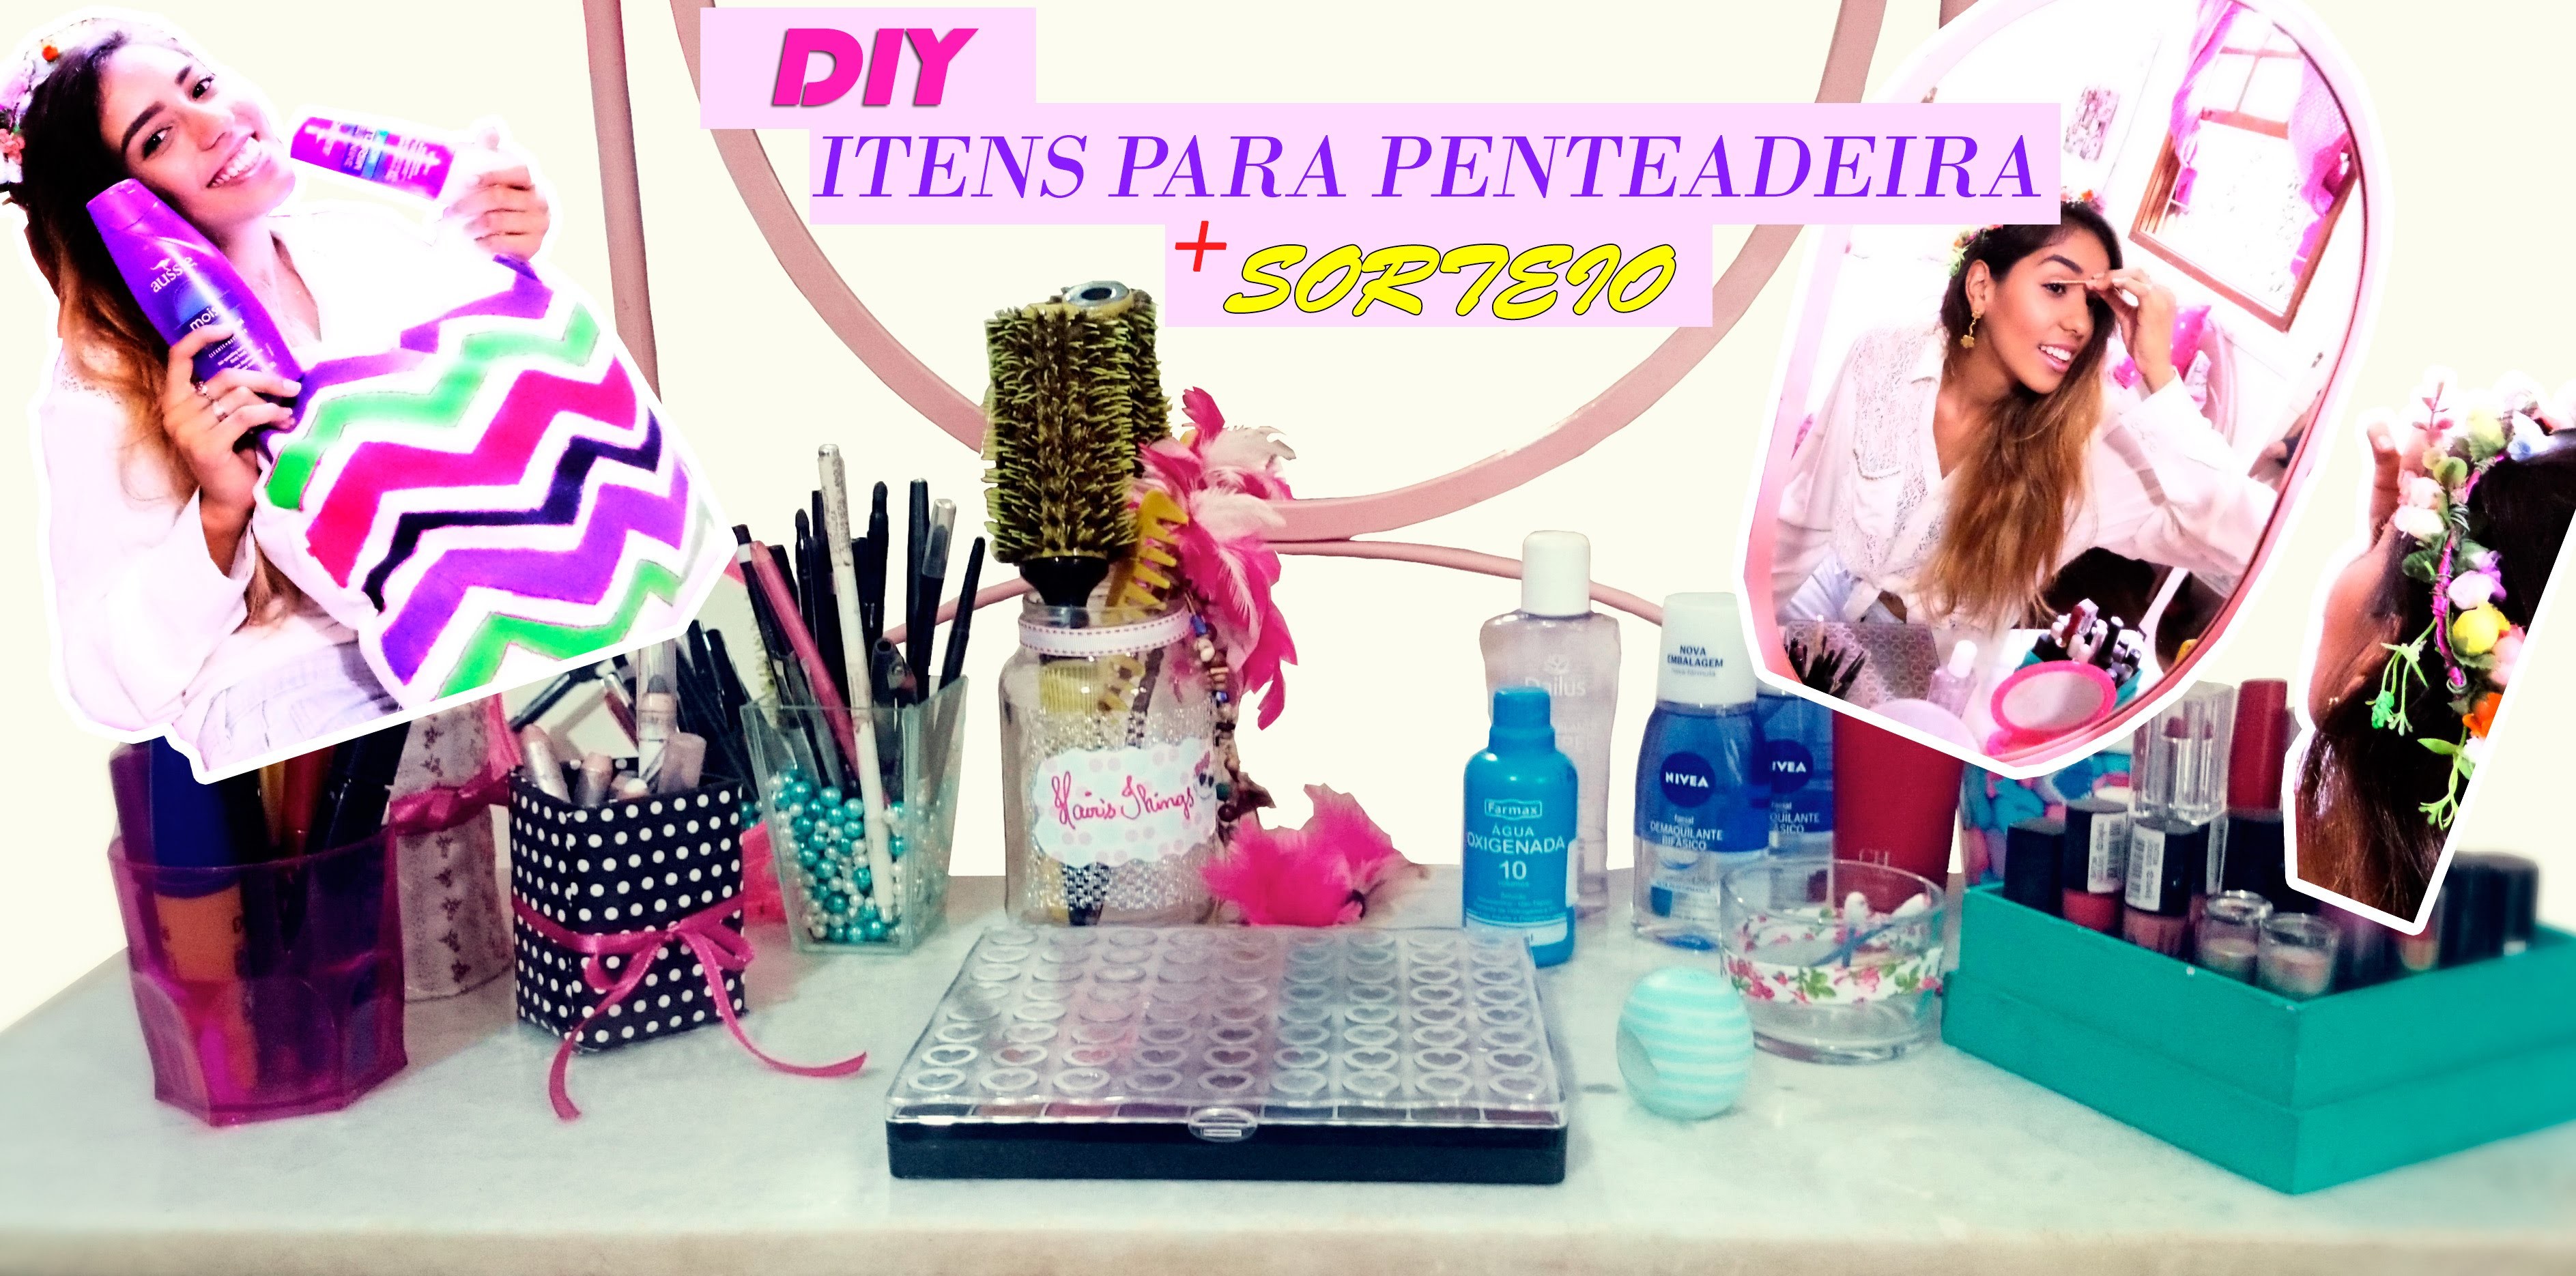 DIY-Dicas+itens p. organizar a penteadeira e agilizar a make+SORTEIOS|Spring Room Decor|LetíciaDIY